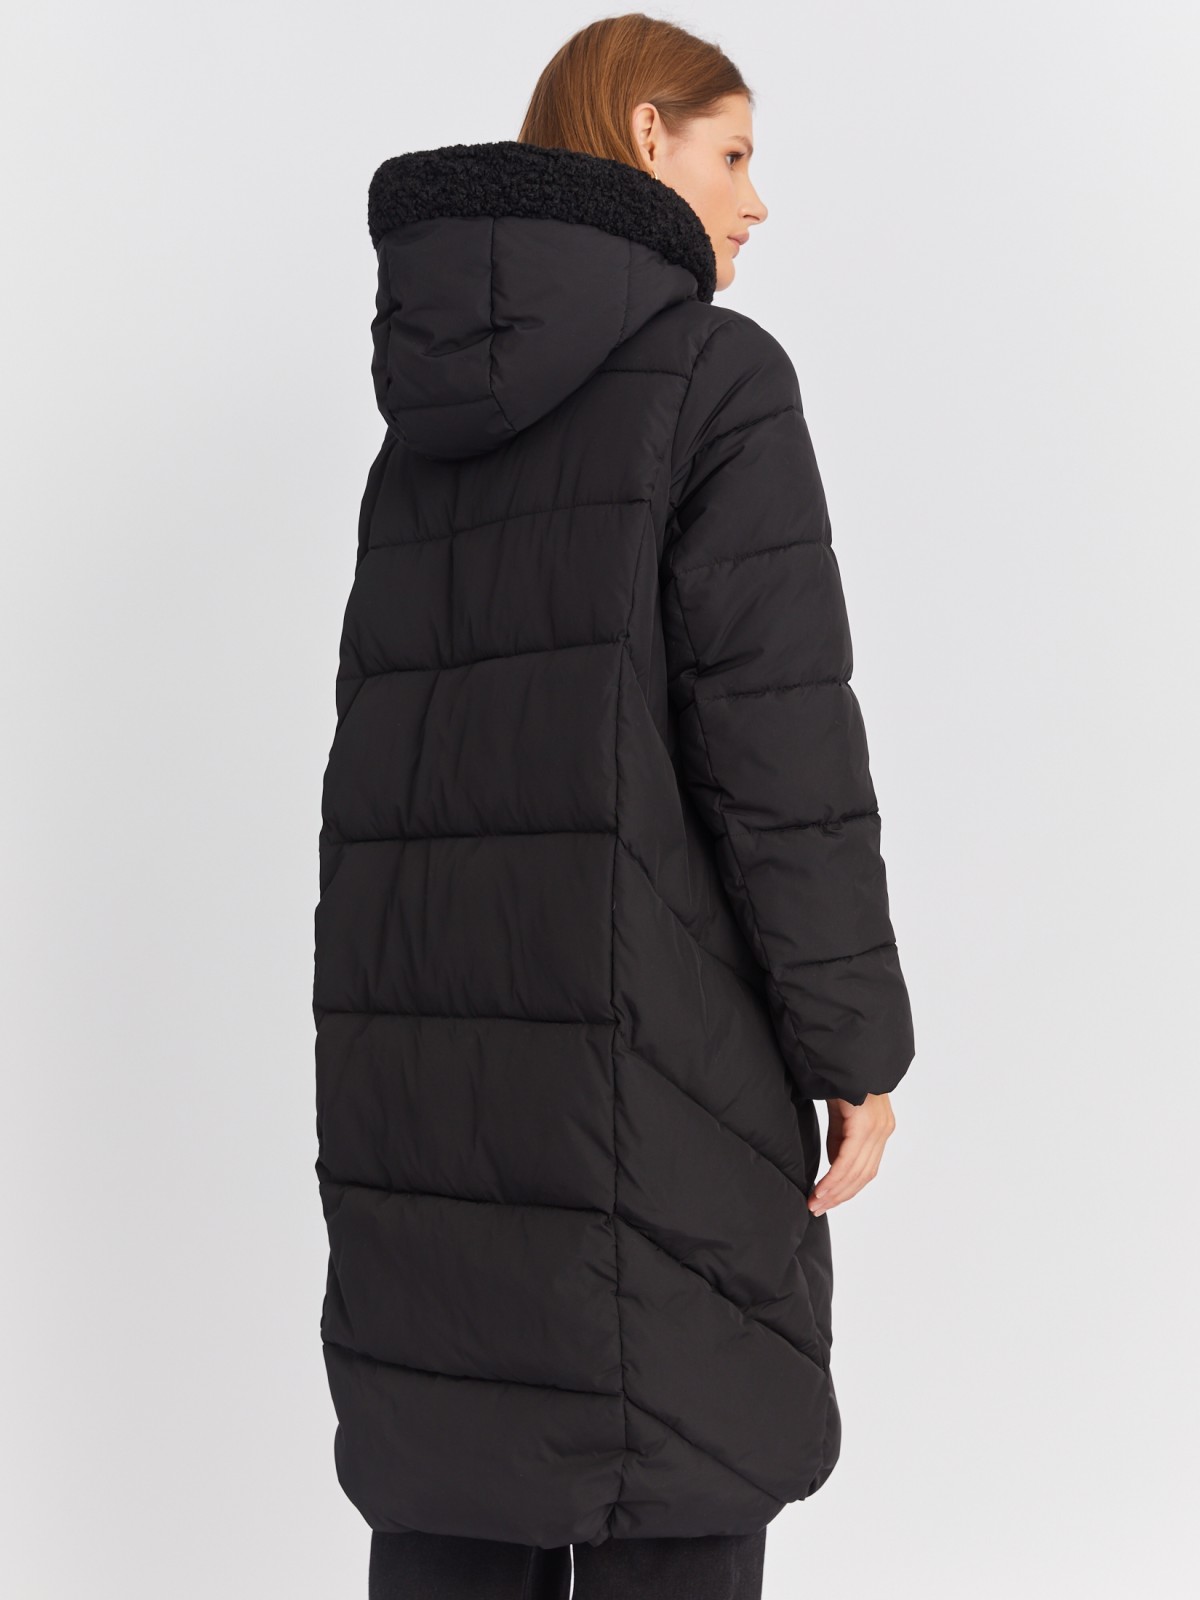 Тёплая куртка-пальто с капюшоном и отделкой из экомеха zolla 022425276044, цвет черный, размер M - фото 5